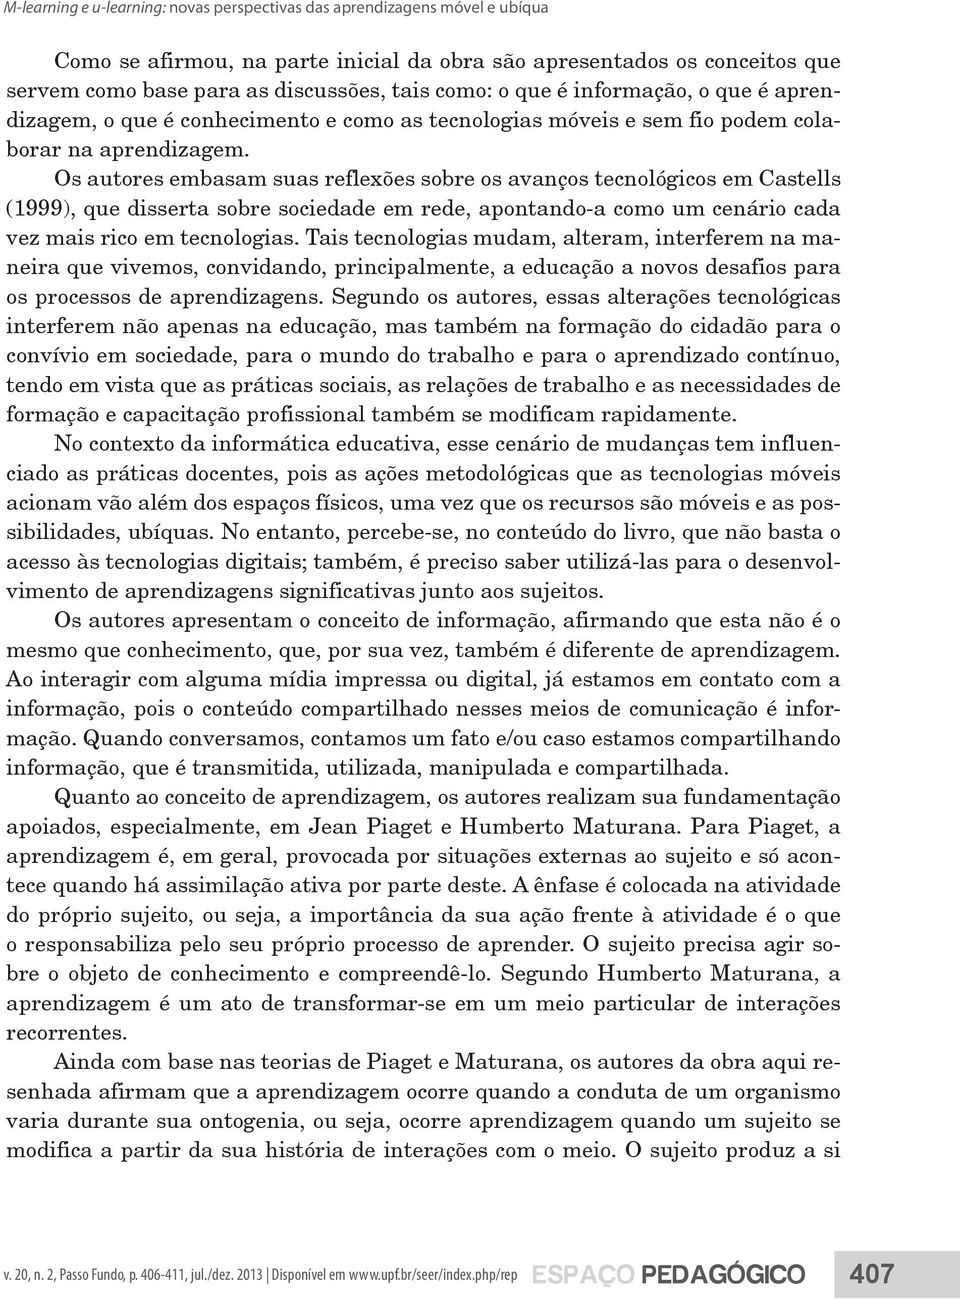 Os autores embasam suas reflexões sobre os avanços tecnológicos em Castells (1999), que disserta sobre sociedade em rede, apontando-a como um cenário cada vez mais rico em tecnologias.